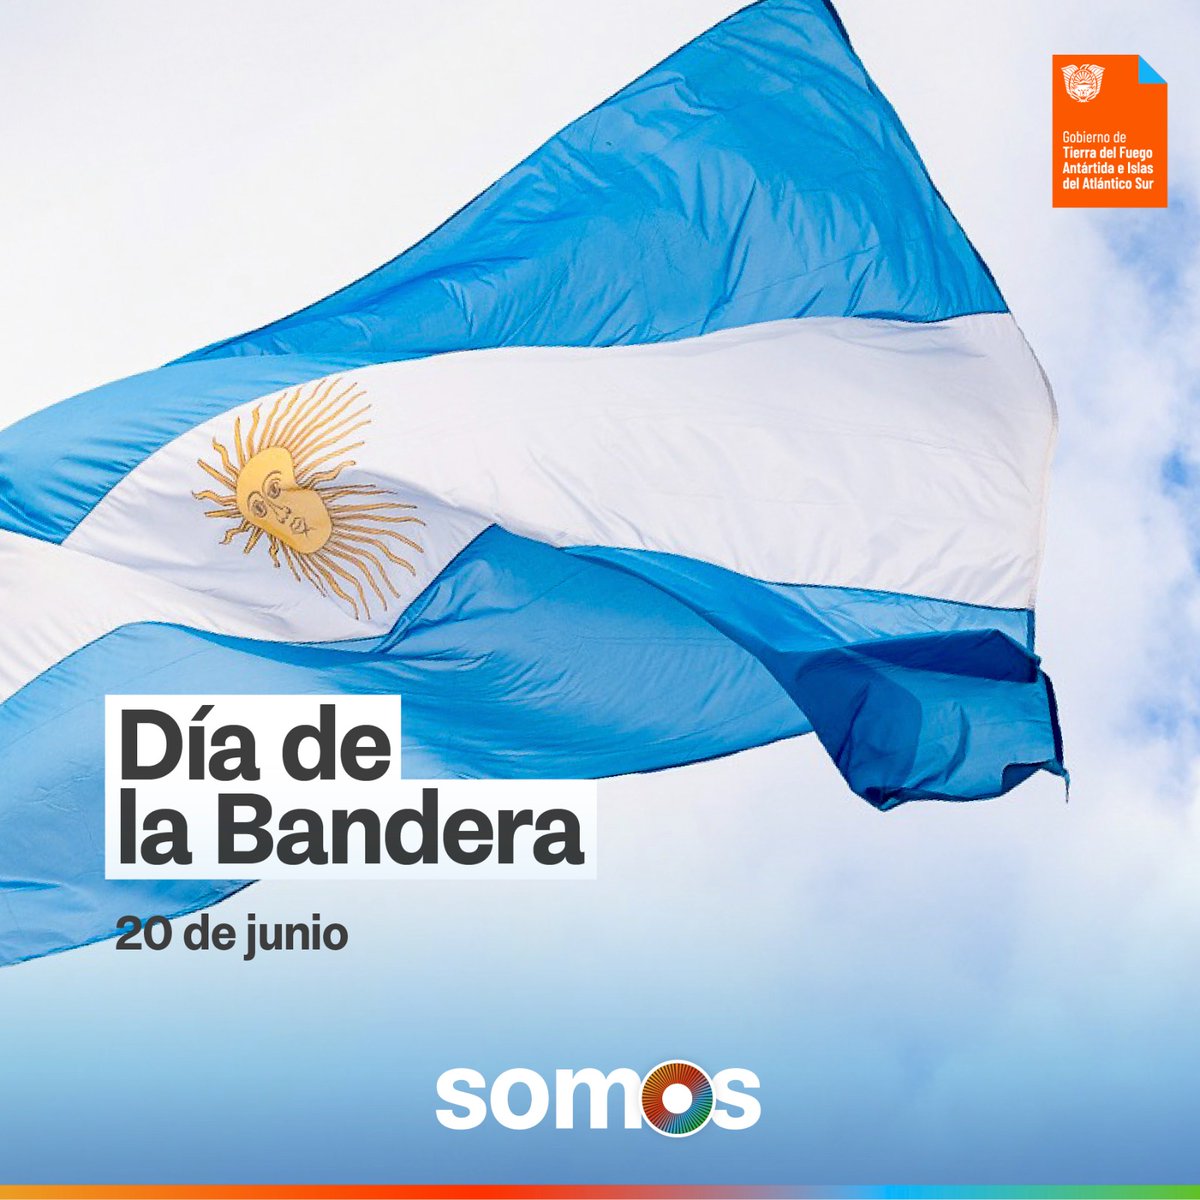 Celebramos este Día de la Bandera con el mismo fervor que Manuel Belgrano la creó y defendió!!!
#DiaDeLaBandera #soberanianacional #dpptdf #tierradelfuego #ushuaia #findelmundo #hacemospatria #somosTDF